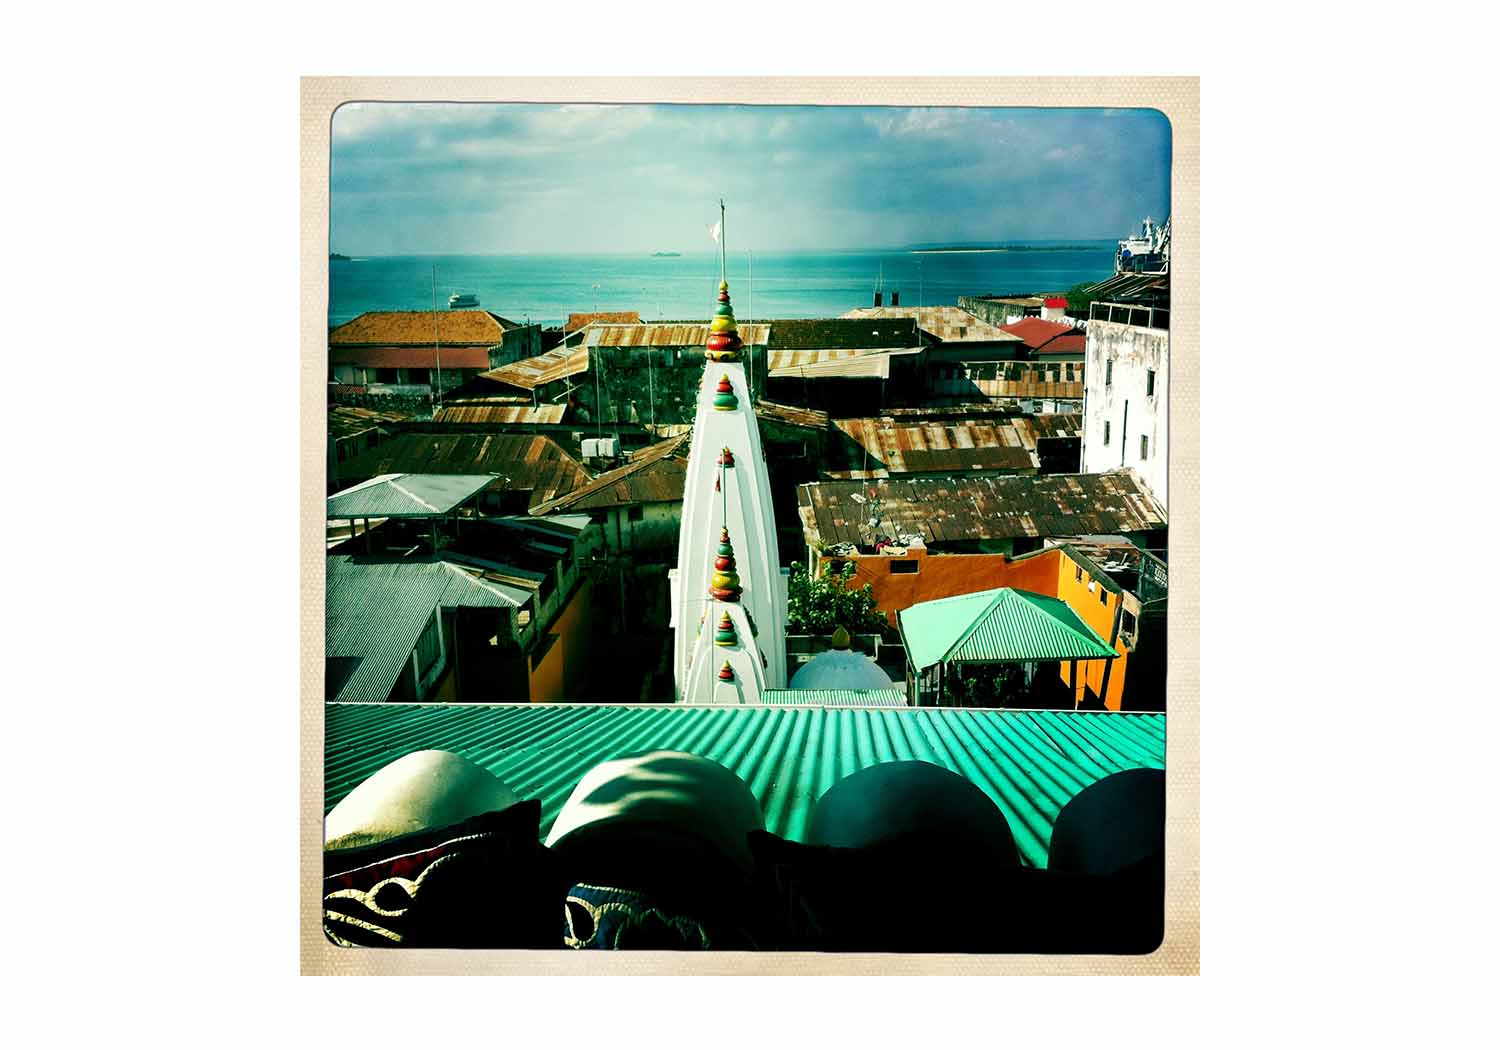 Zanzibar - Natasha Hemrajani for currentMood